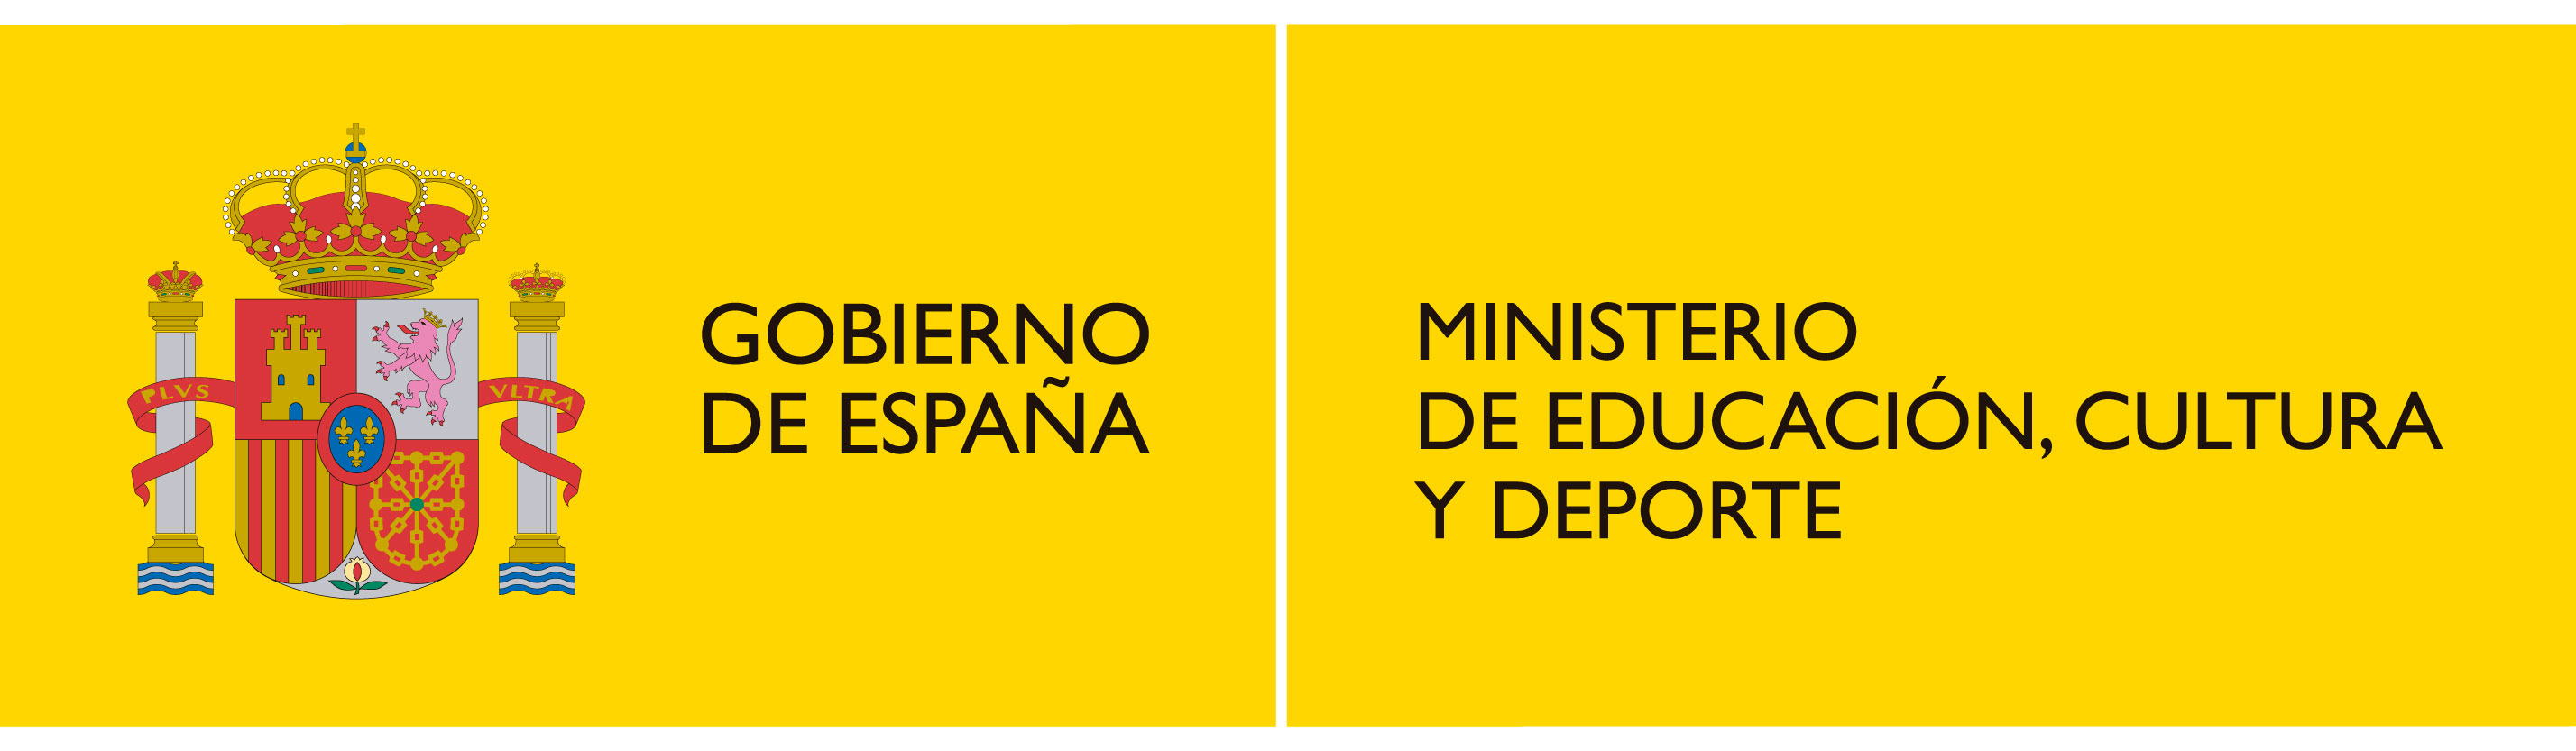 Ministerio de educación y deporte. Gobierno de España